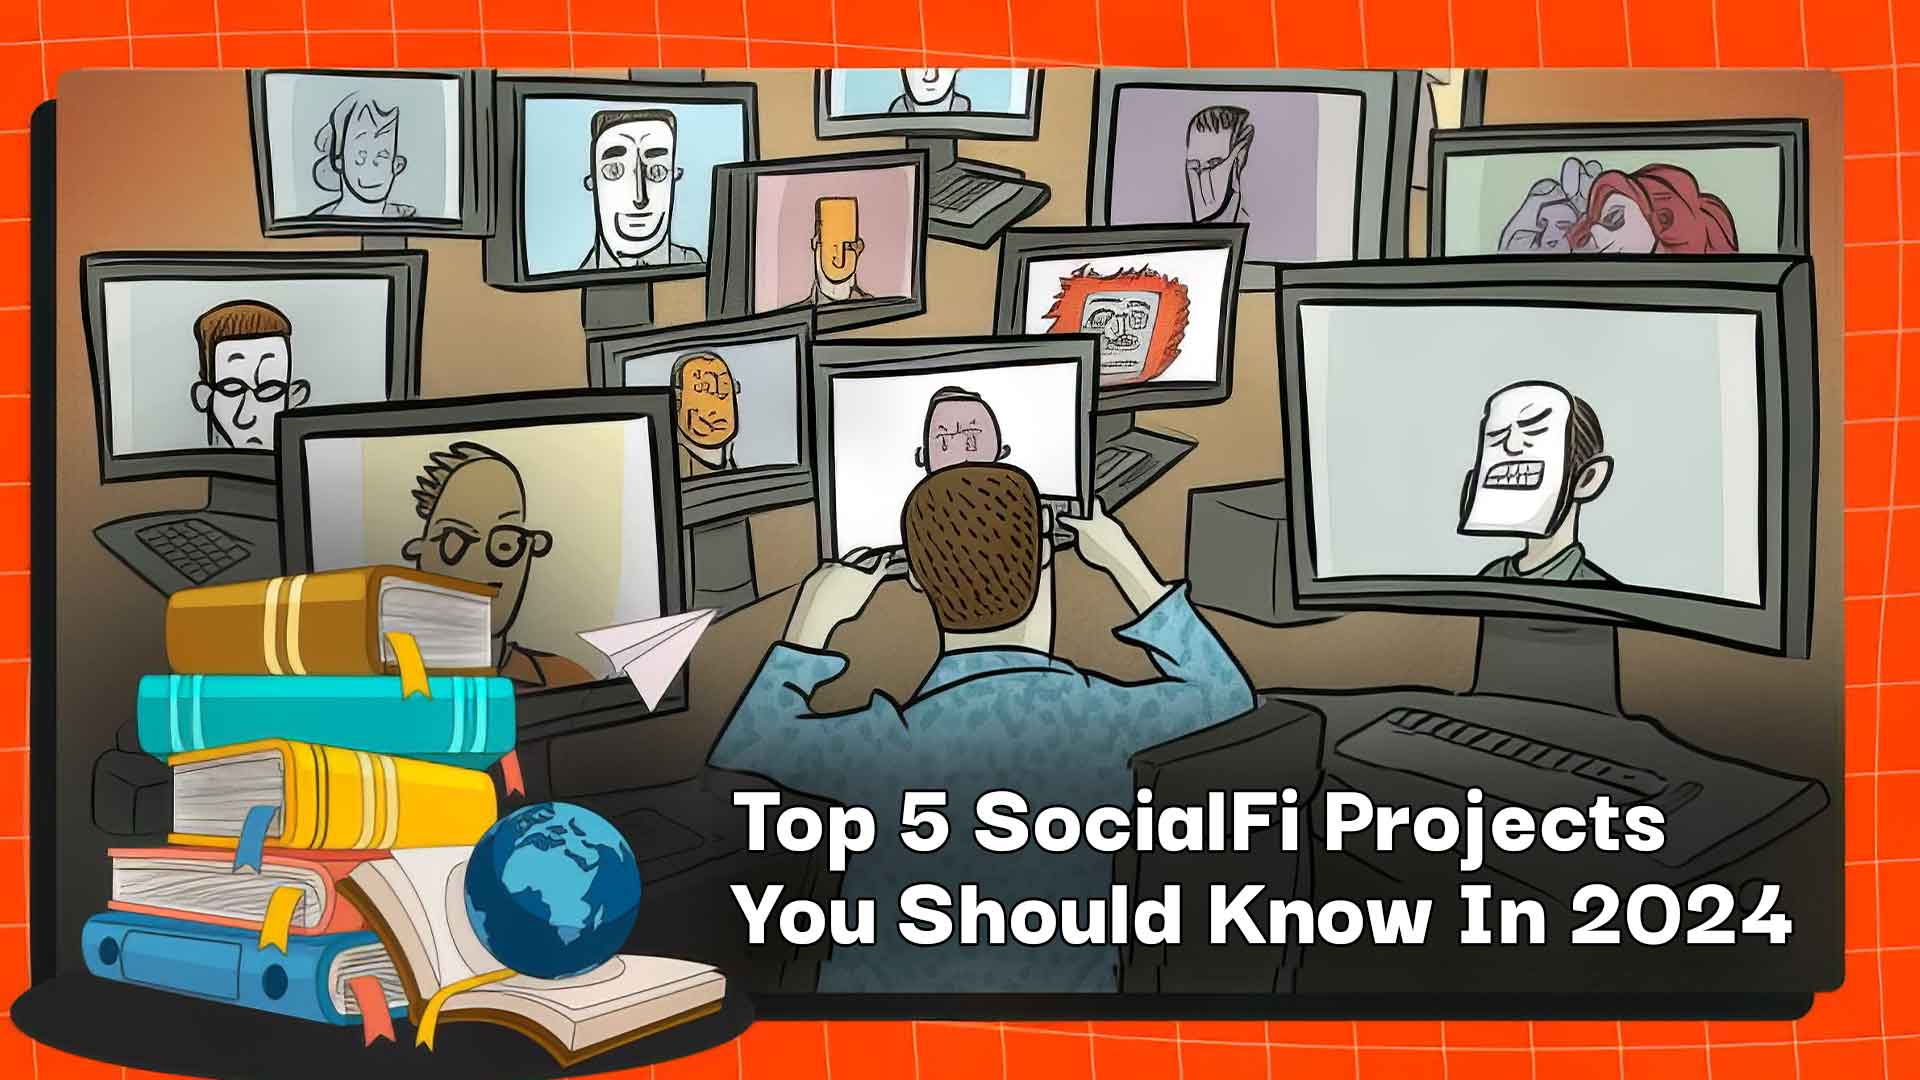 Os 5 principais projetos SocialFi que você deve conhecer em 2024 1